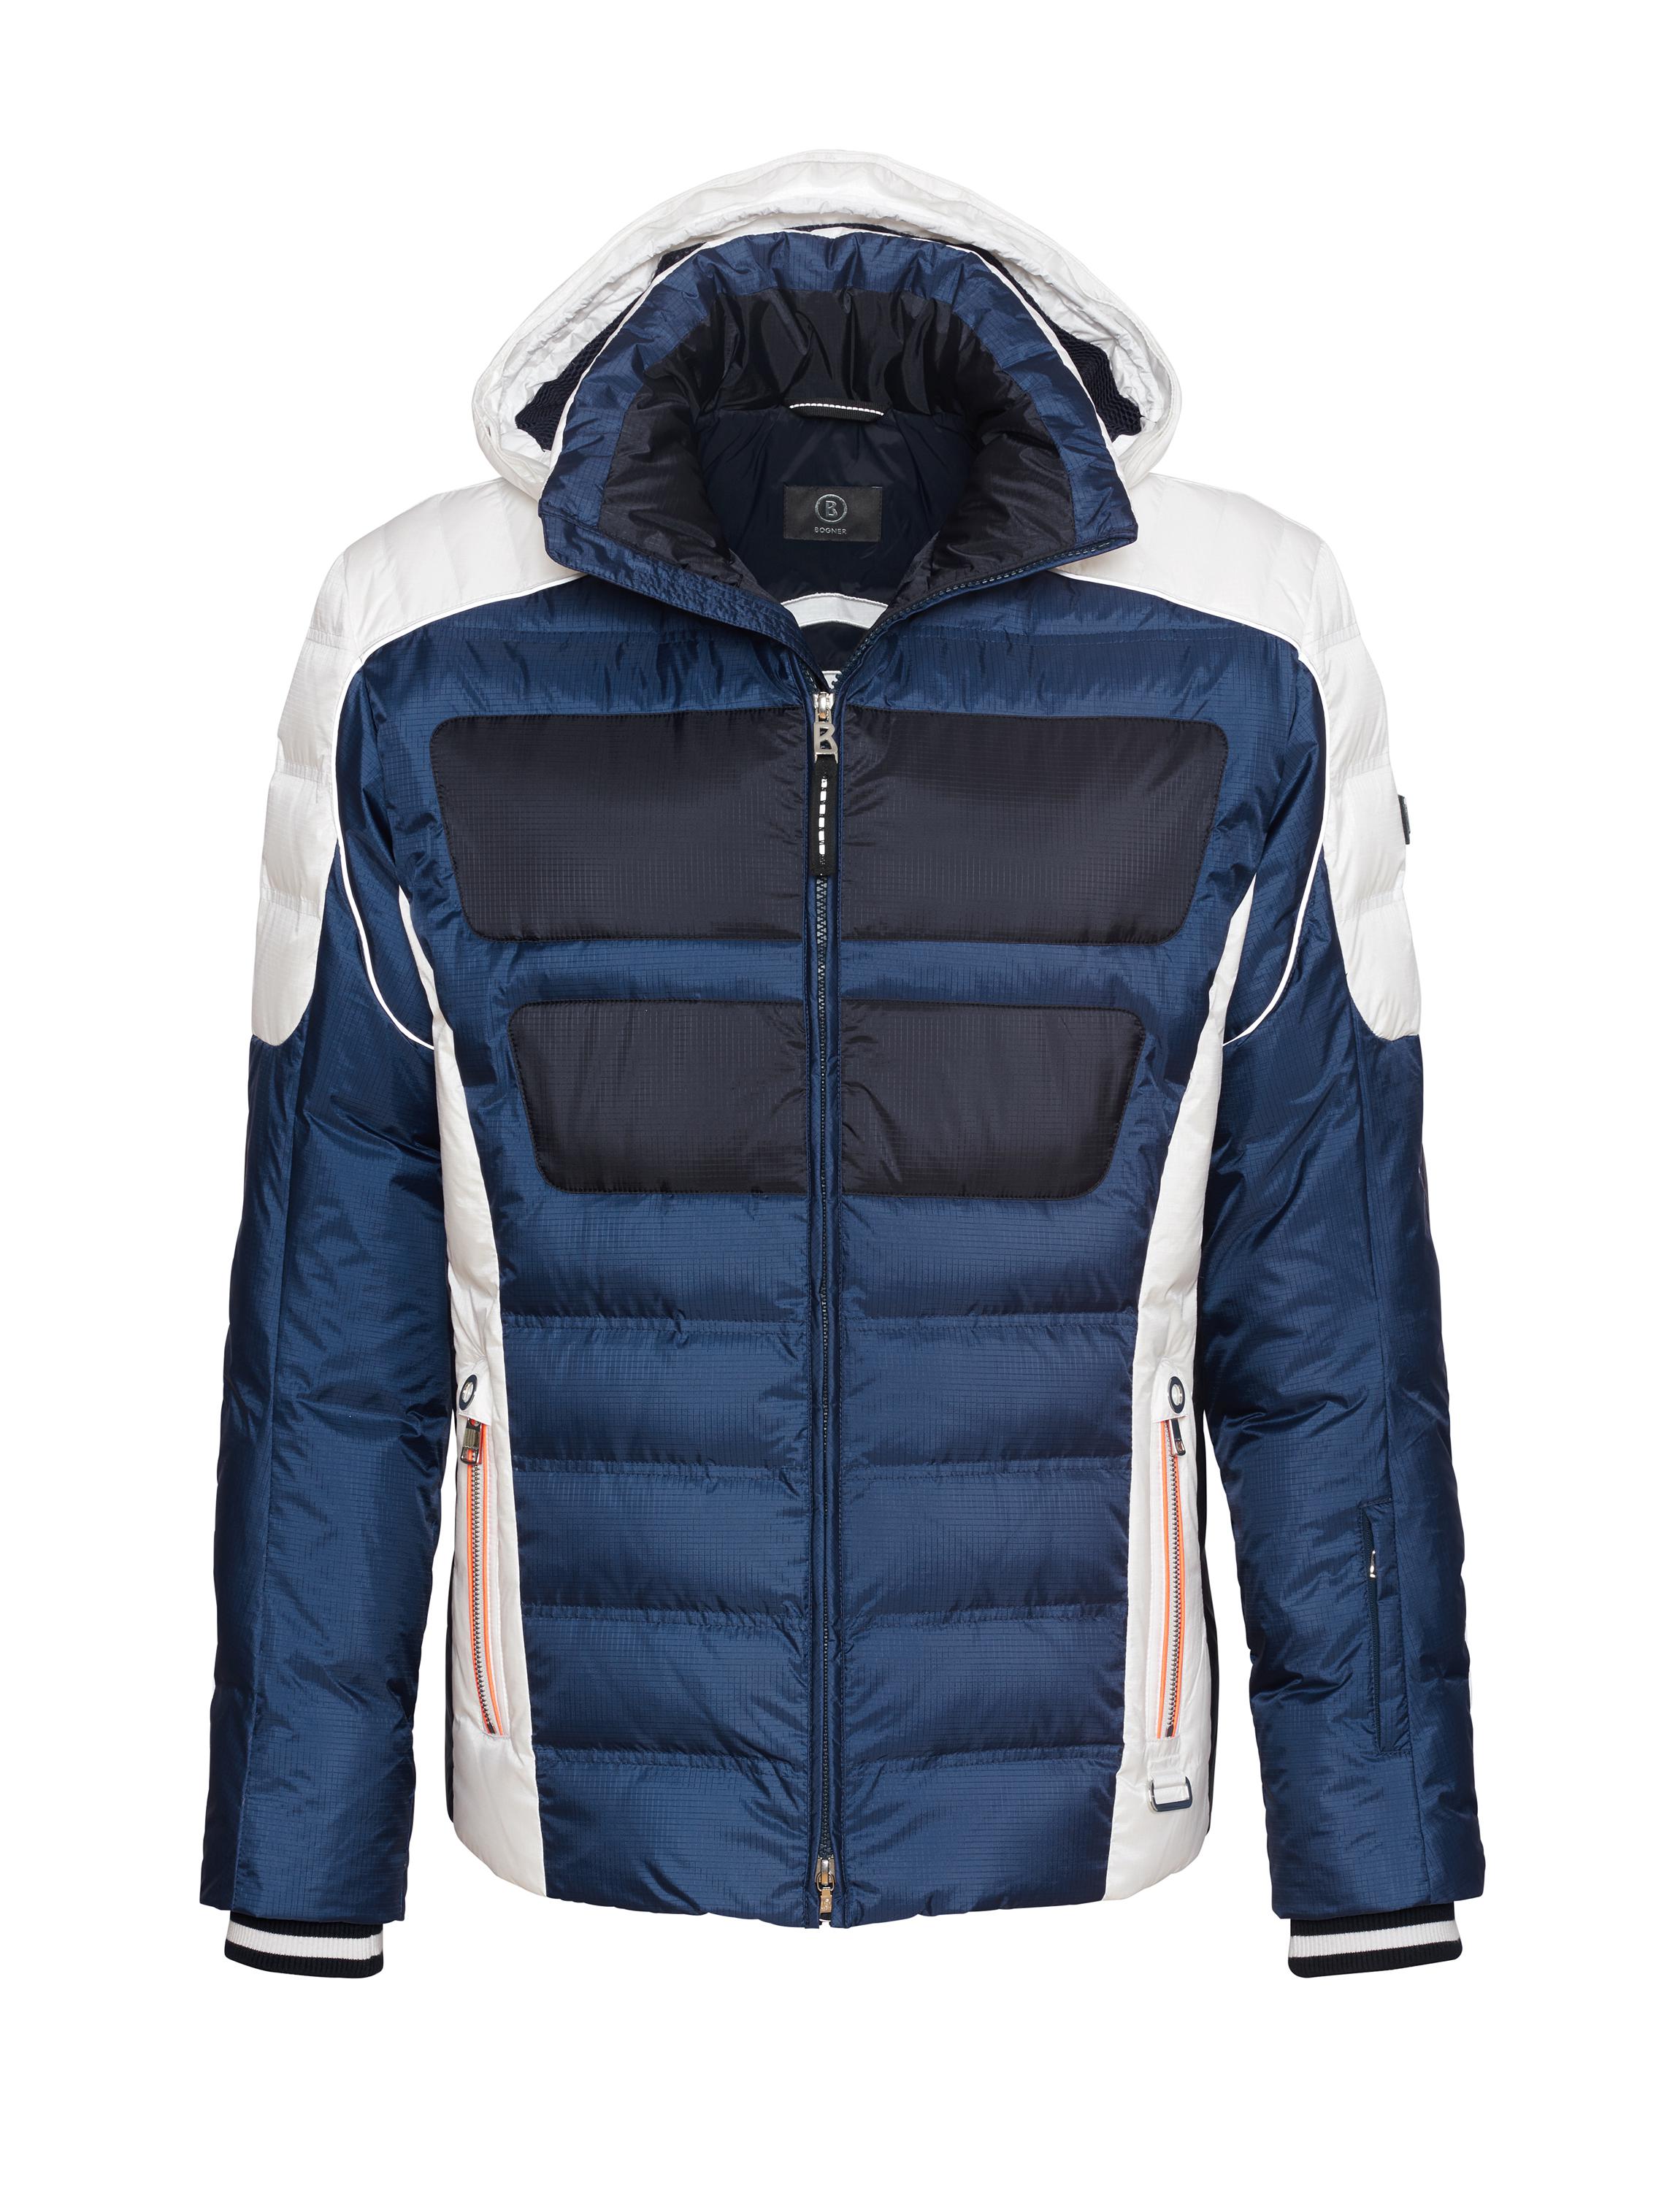 Lyst - Bogner Ski Down Jacket Enrico in Blue for Men